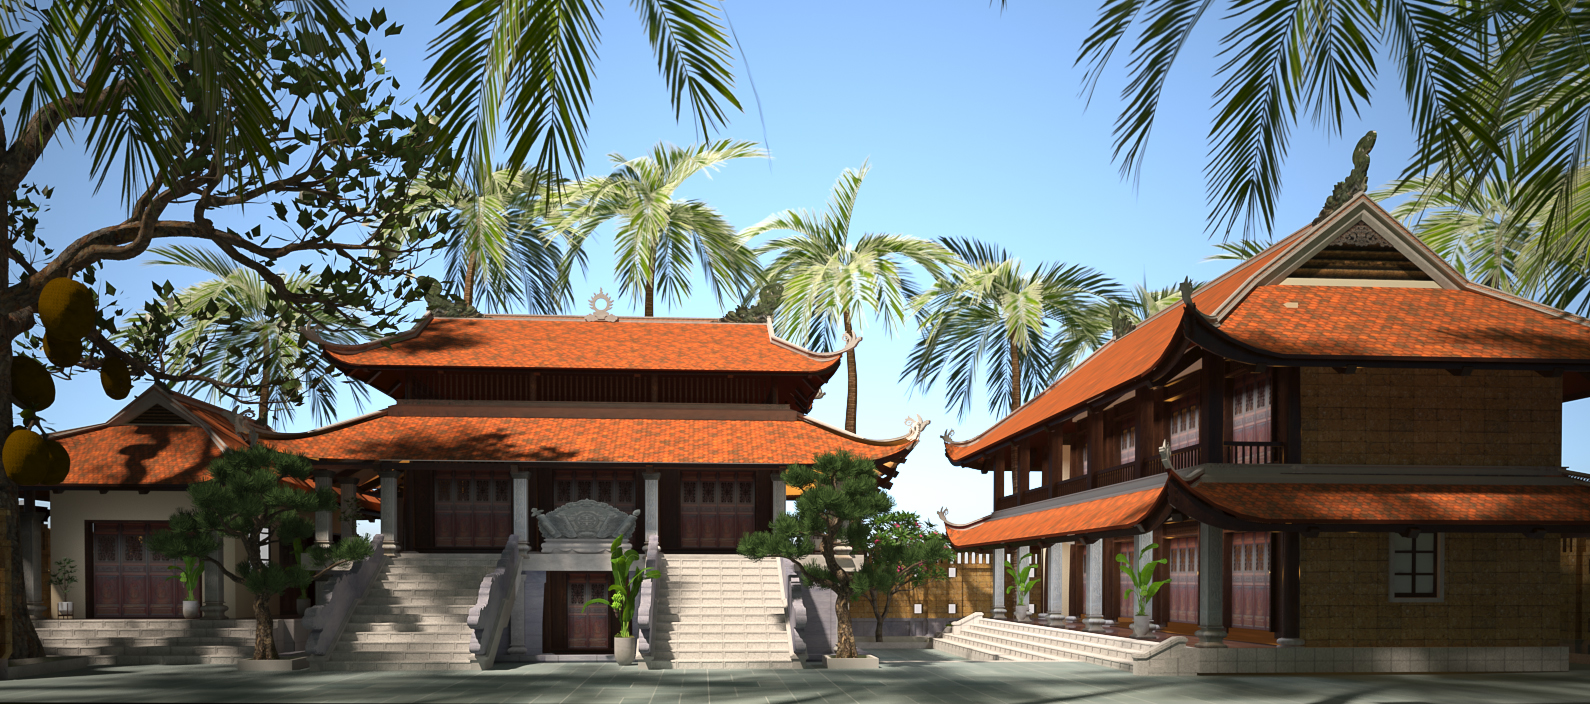 Thiết kế Nhà tại Nam Định Anh Nam - Nam Định 1644112937 2